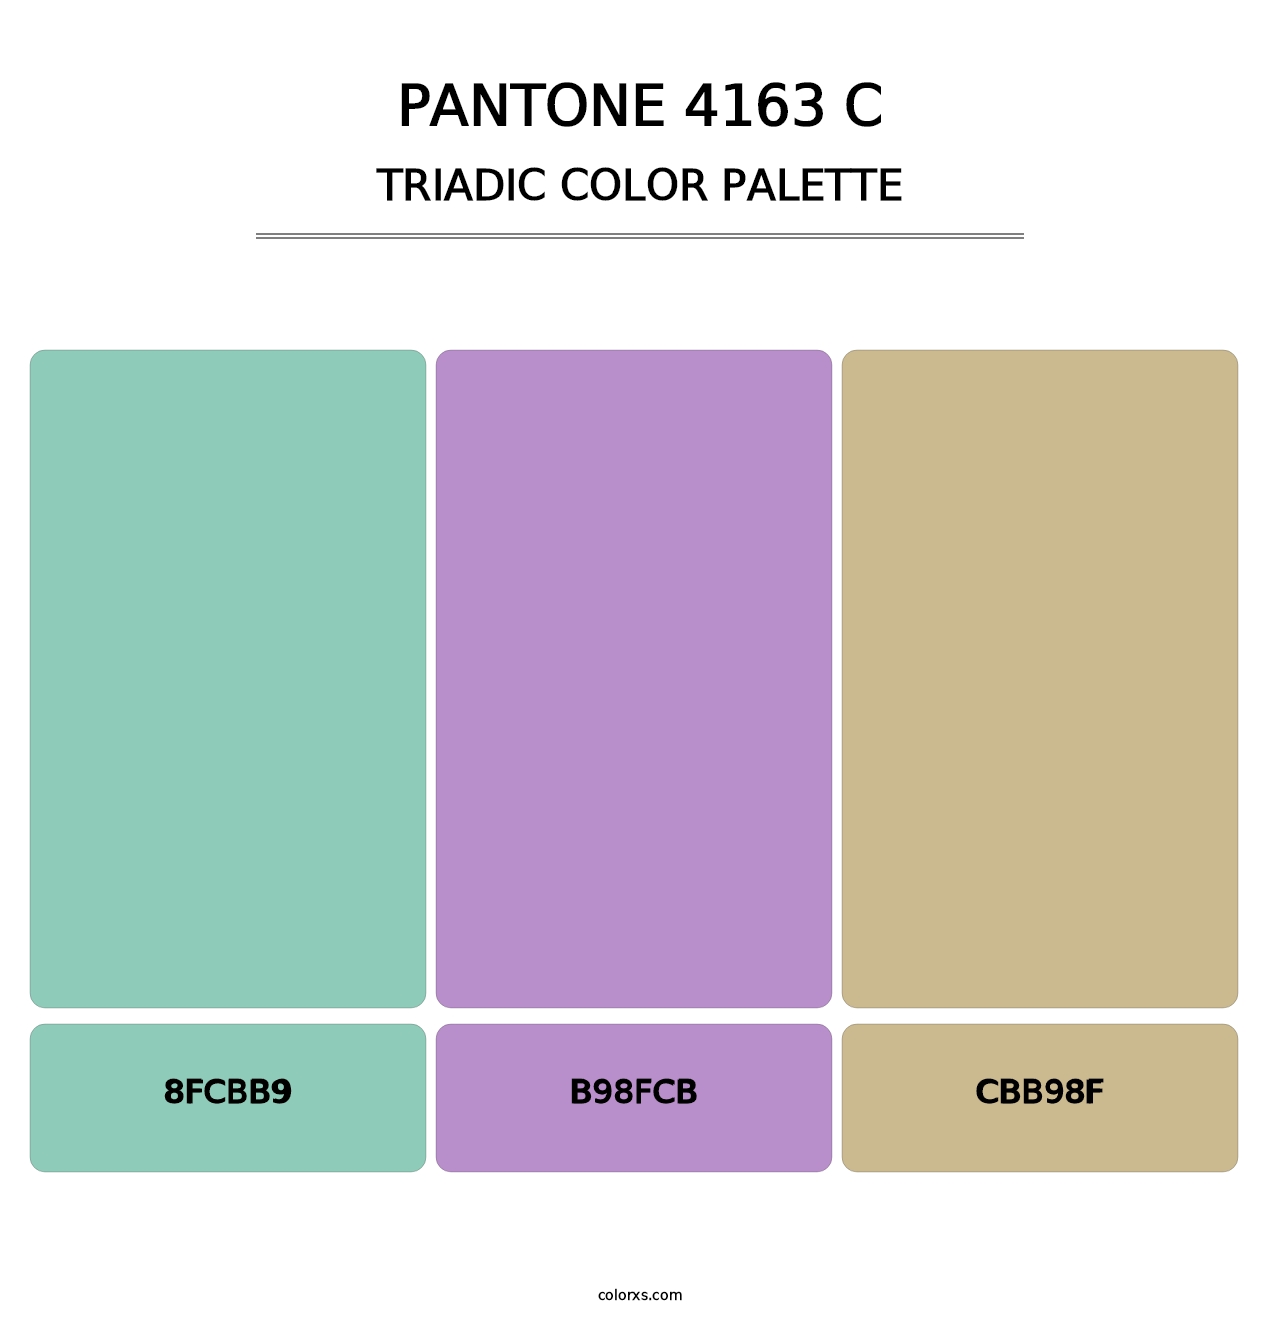 PANTONE 4163 C - Triadic Color Palette